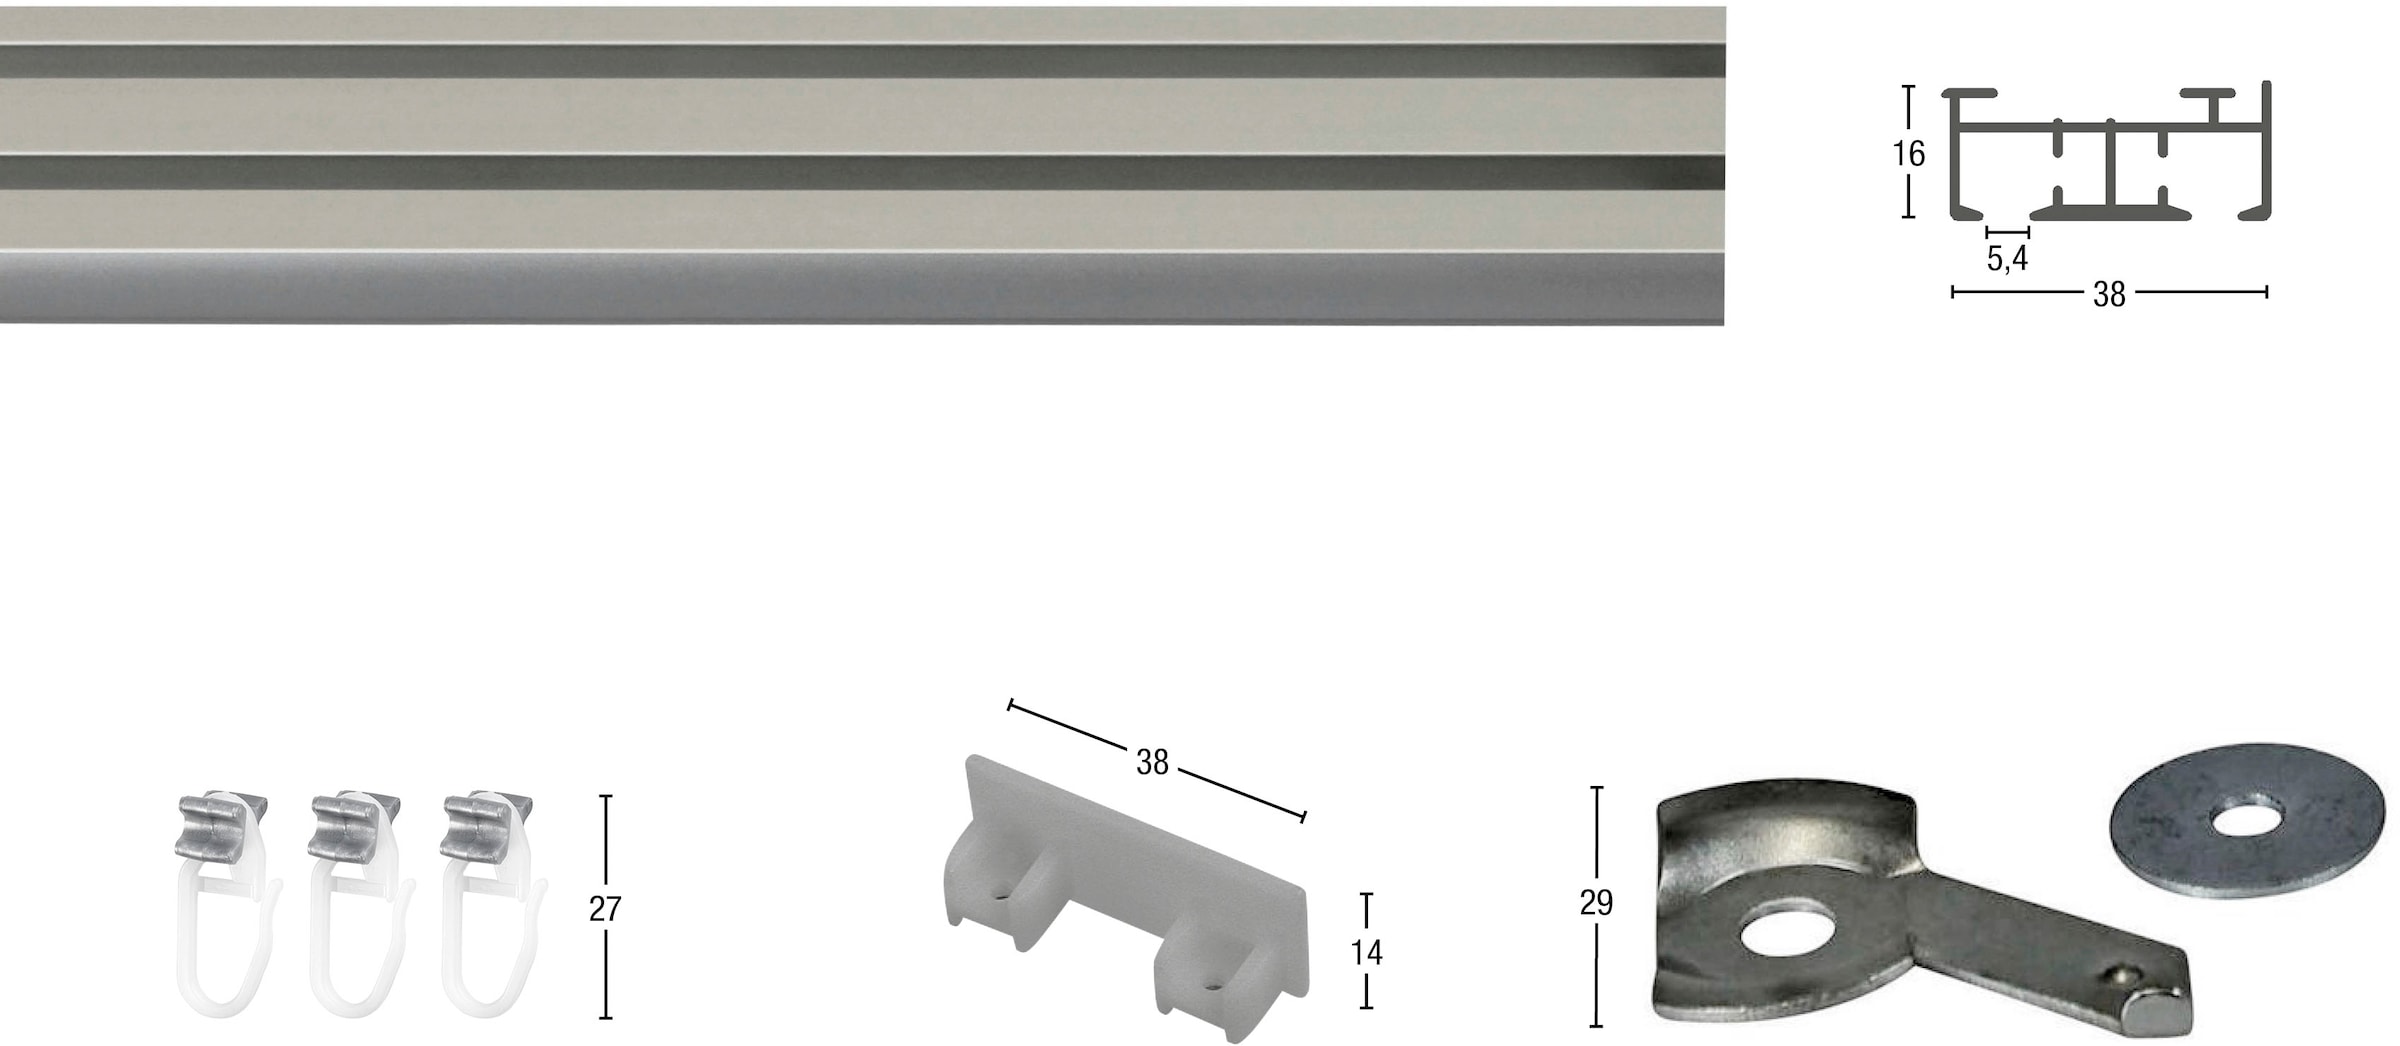 GARESA Gardinenschiene »Flächenvorhangschiene SMART«, 2 läufig-läufig, Wunschmaßlänge, Aluminiumschiene für Vorhänge mit Gleiter, verlängerbar, Decke